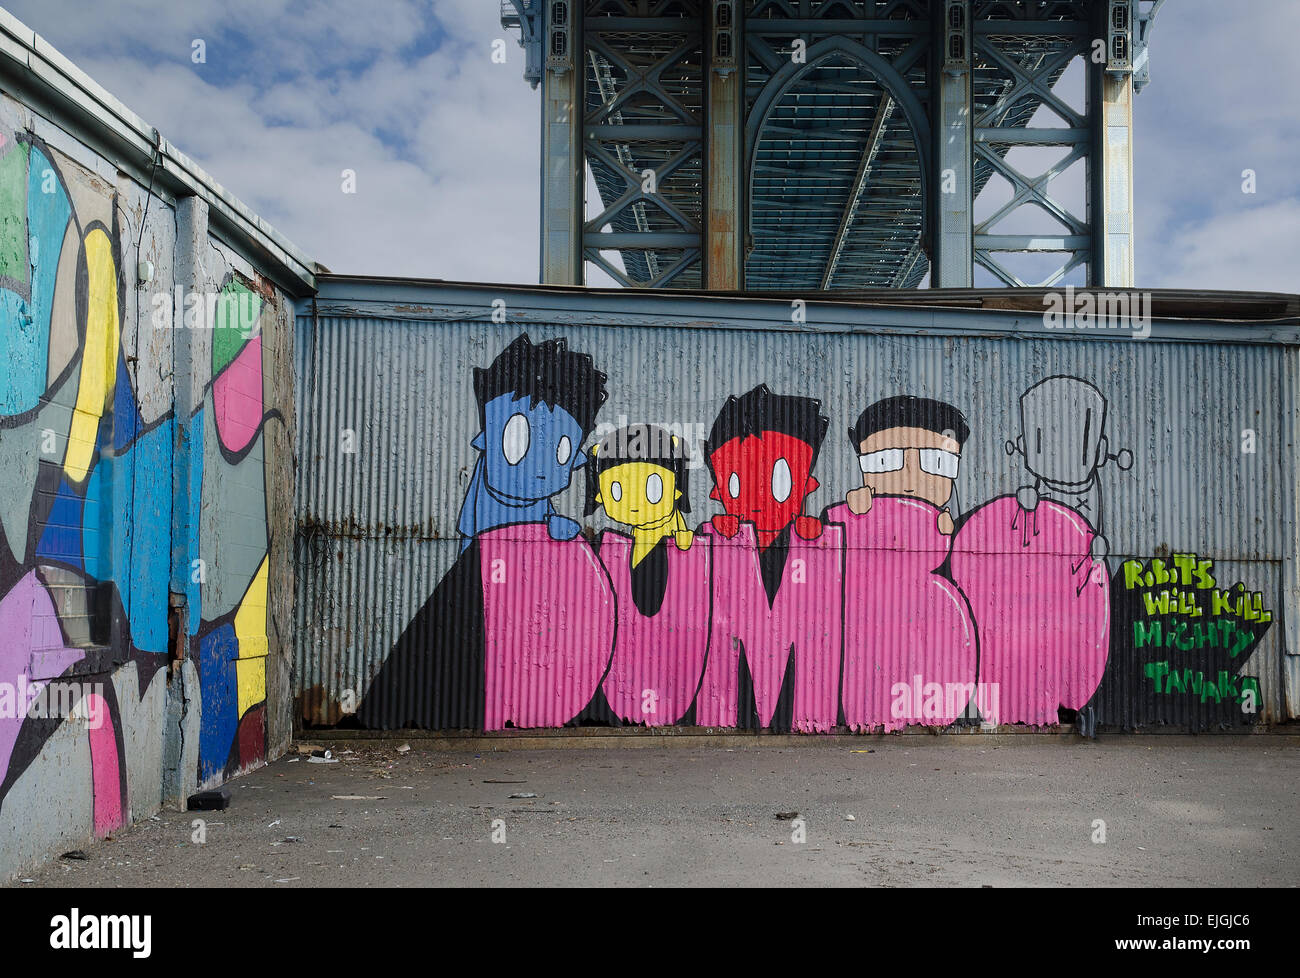 Dumbo Graffiti unter der Manhattan Bridge gemalt. Roboter werden mächtige Tanaka töten. Stockfoto